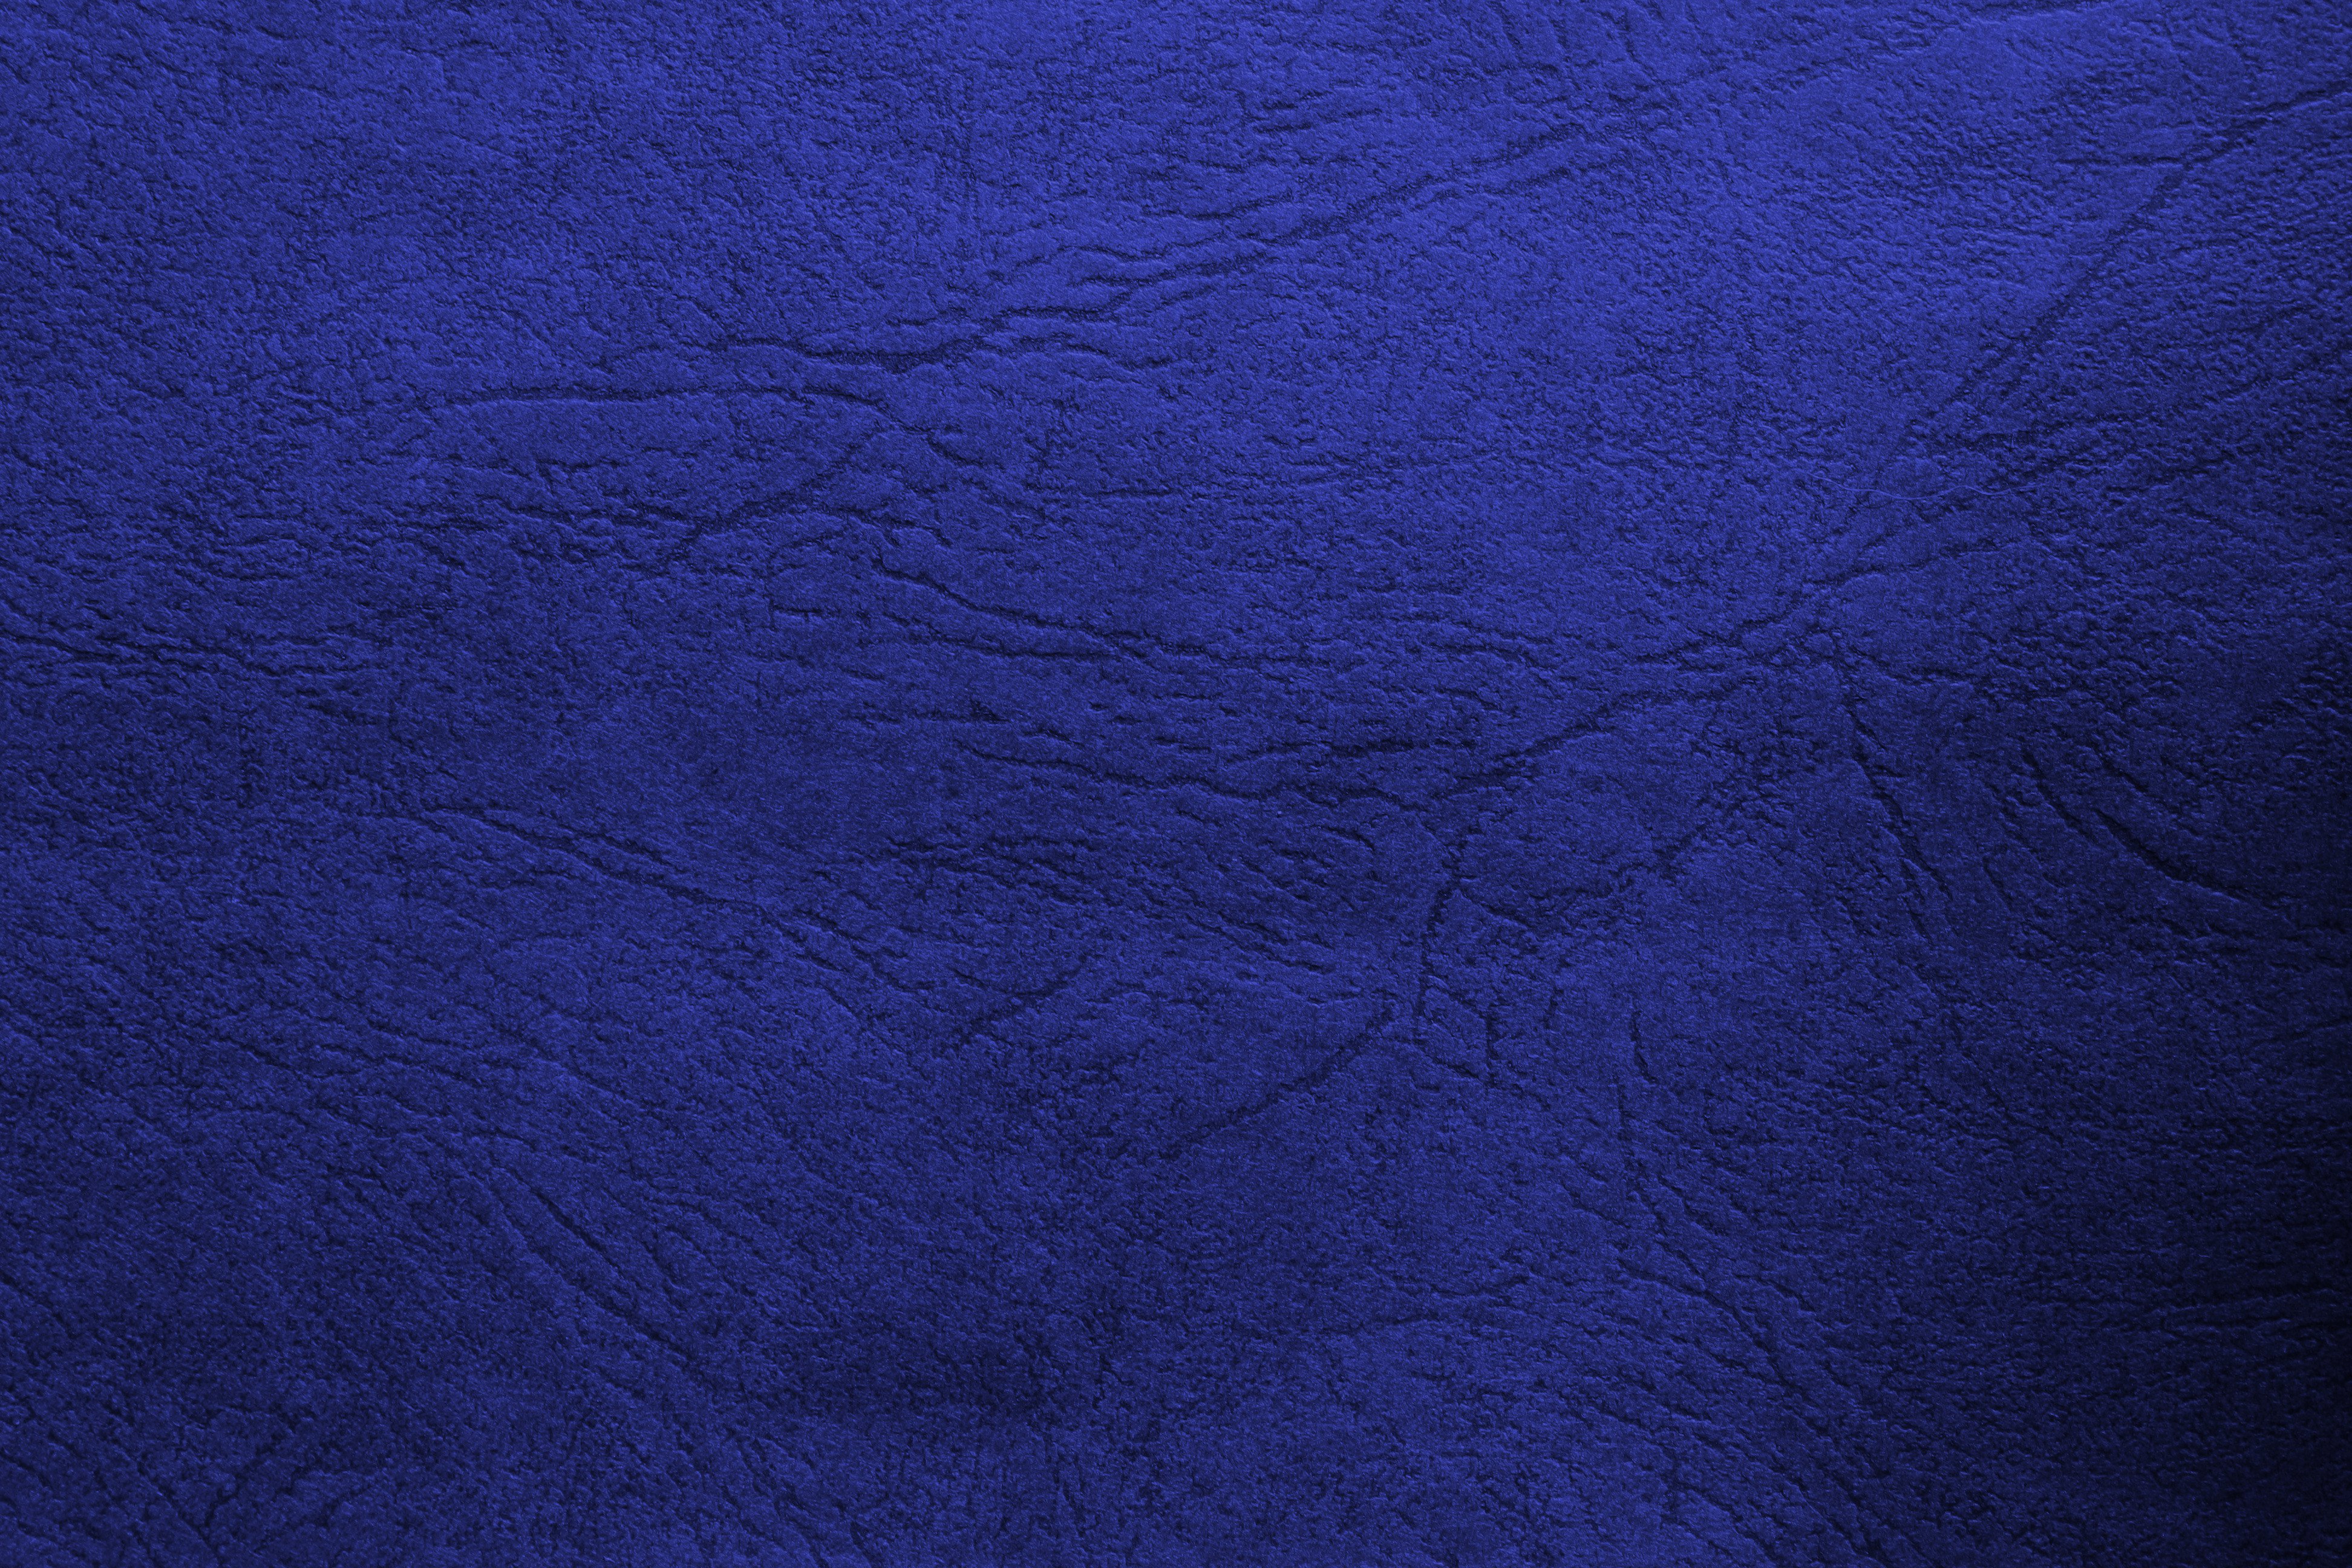 Blue Leather Texture Picture. Free Photograph. Photo Public Domain